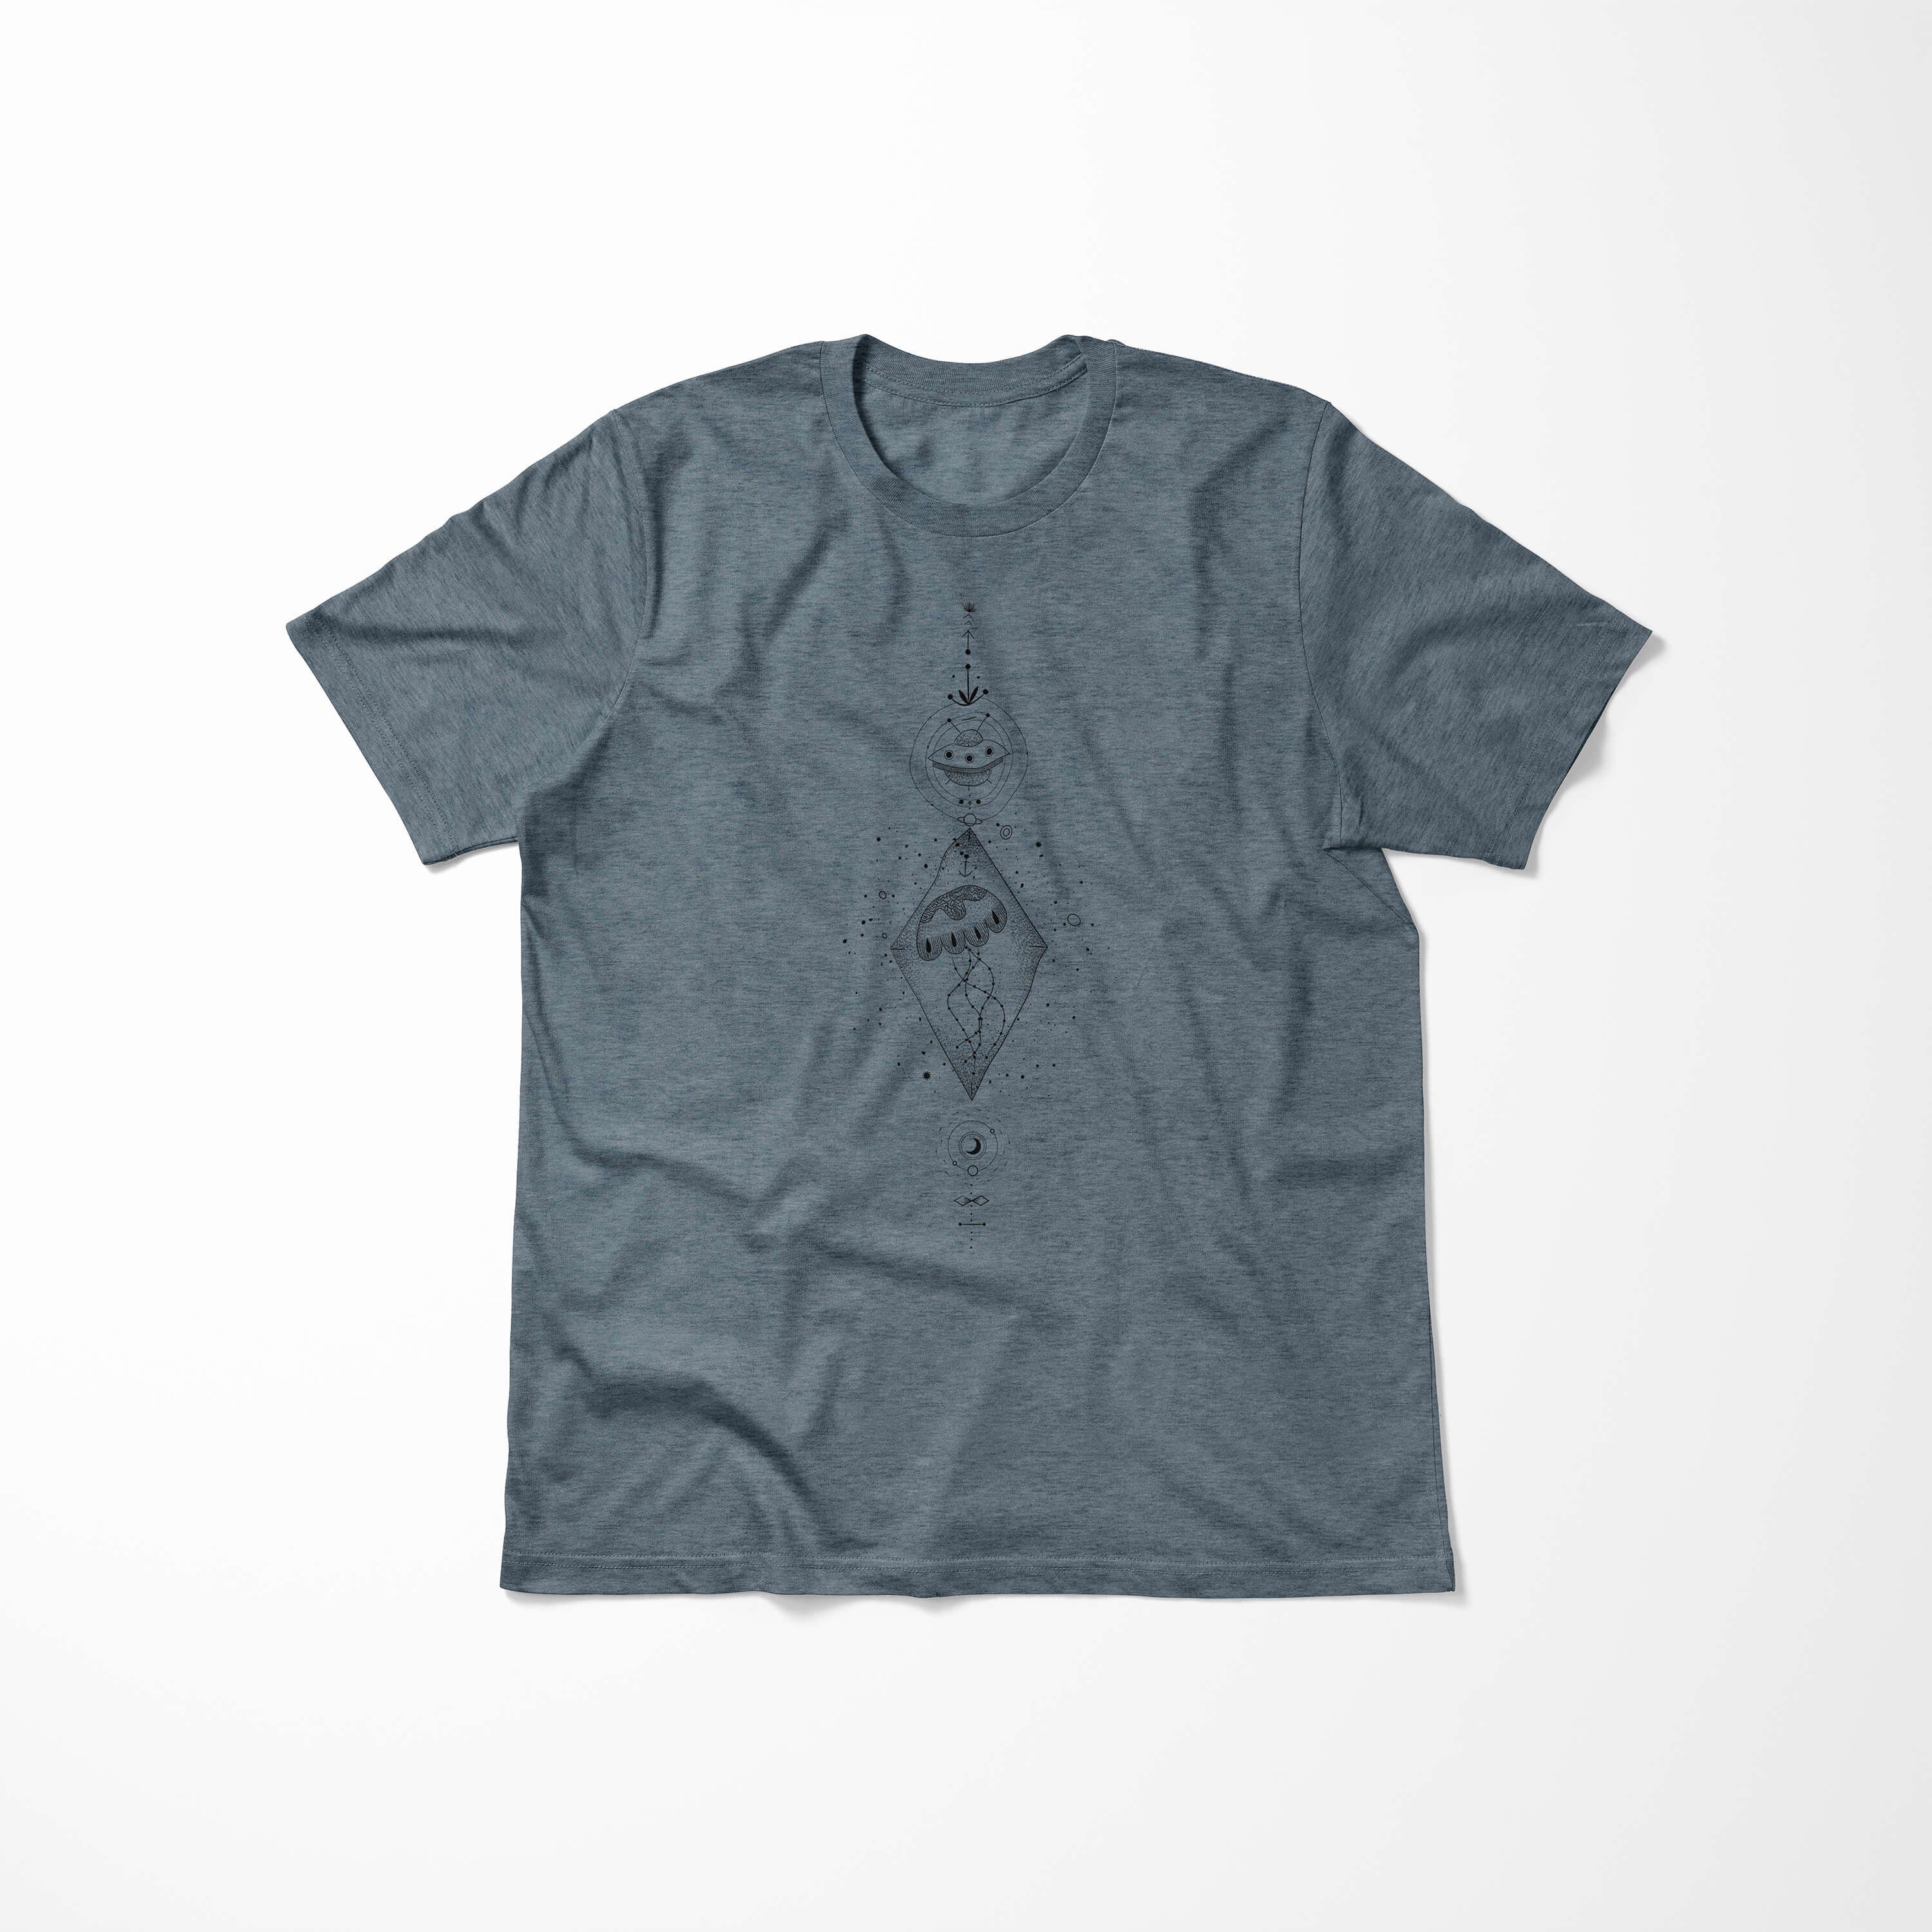 Art T-Shirt Sinus Serie Symbole Premium Struktur angenehmer T-Shirt Tragekomfort No.0059 feine Alchemy Indigo